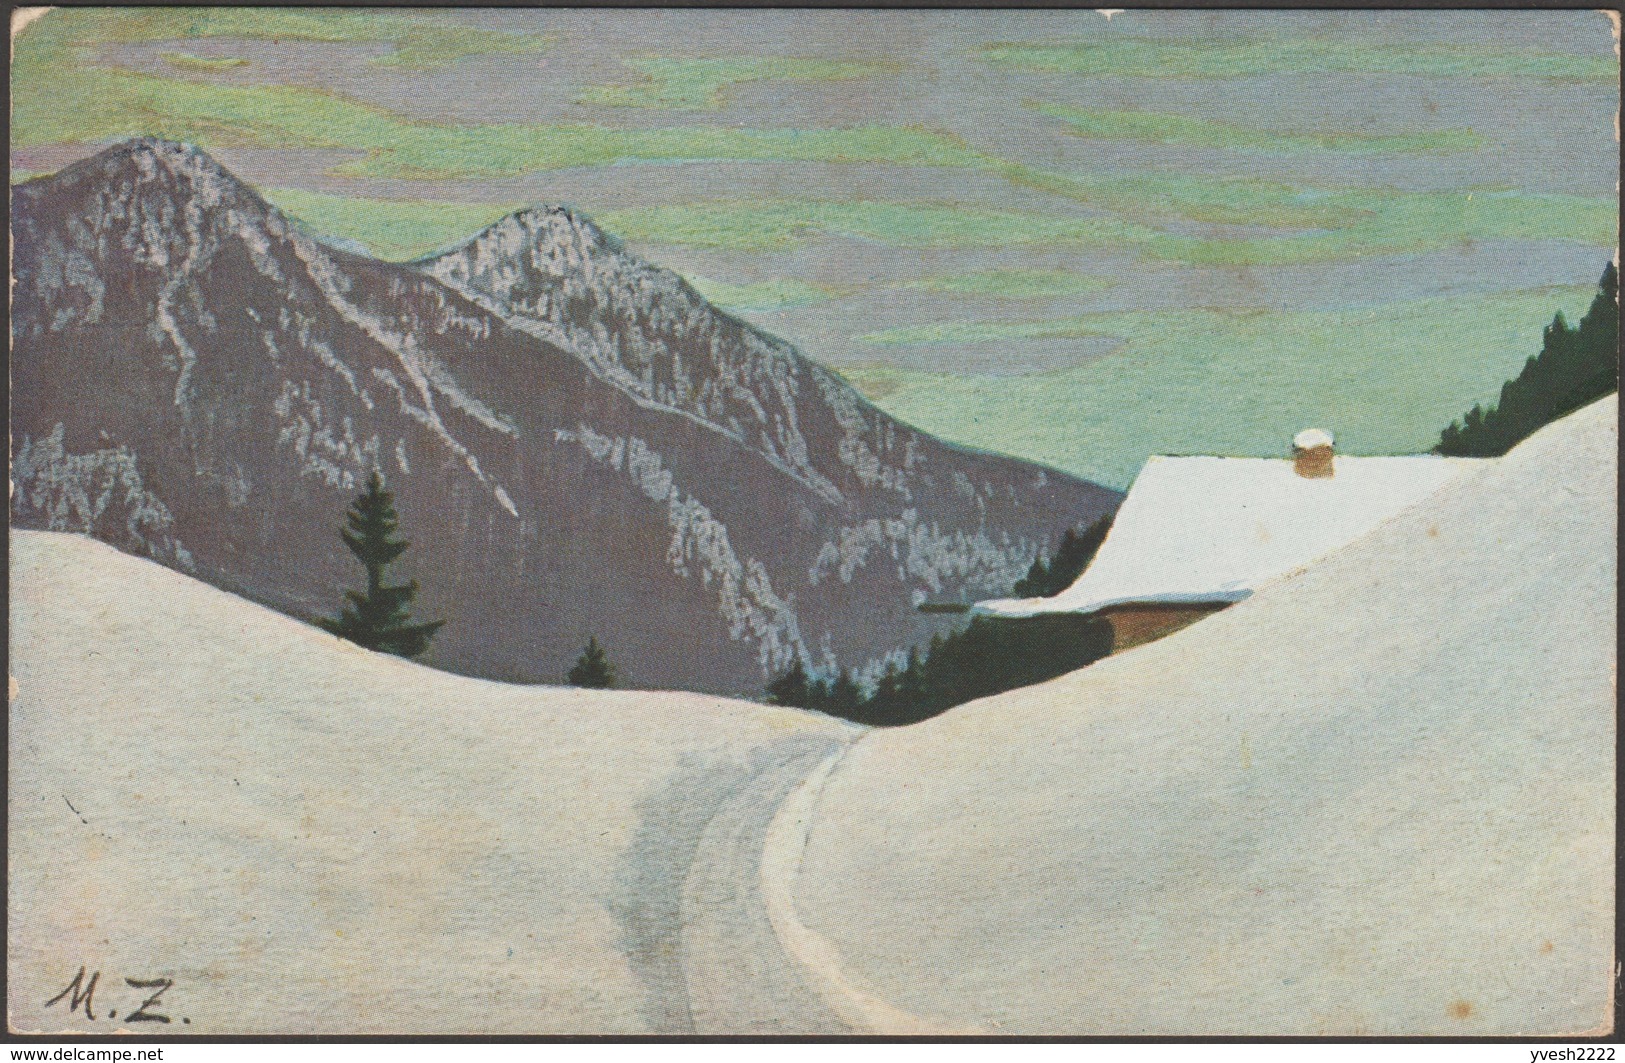 Bavière 1908. Entier Postal Timbré Sur Commande. Refuge De Montagne Recouvert De Neige, Paysage Alpestre. Peinture - Montagnes